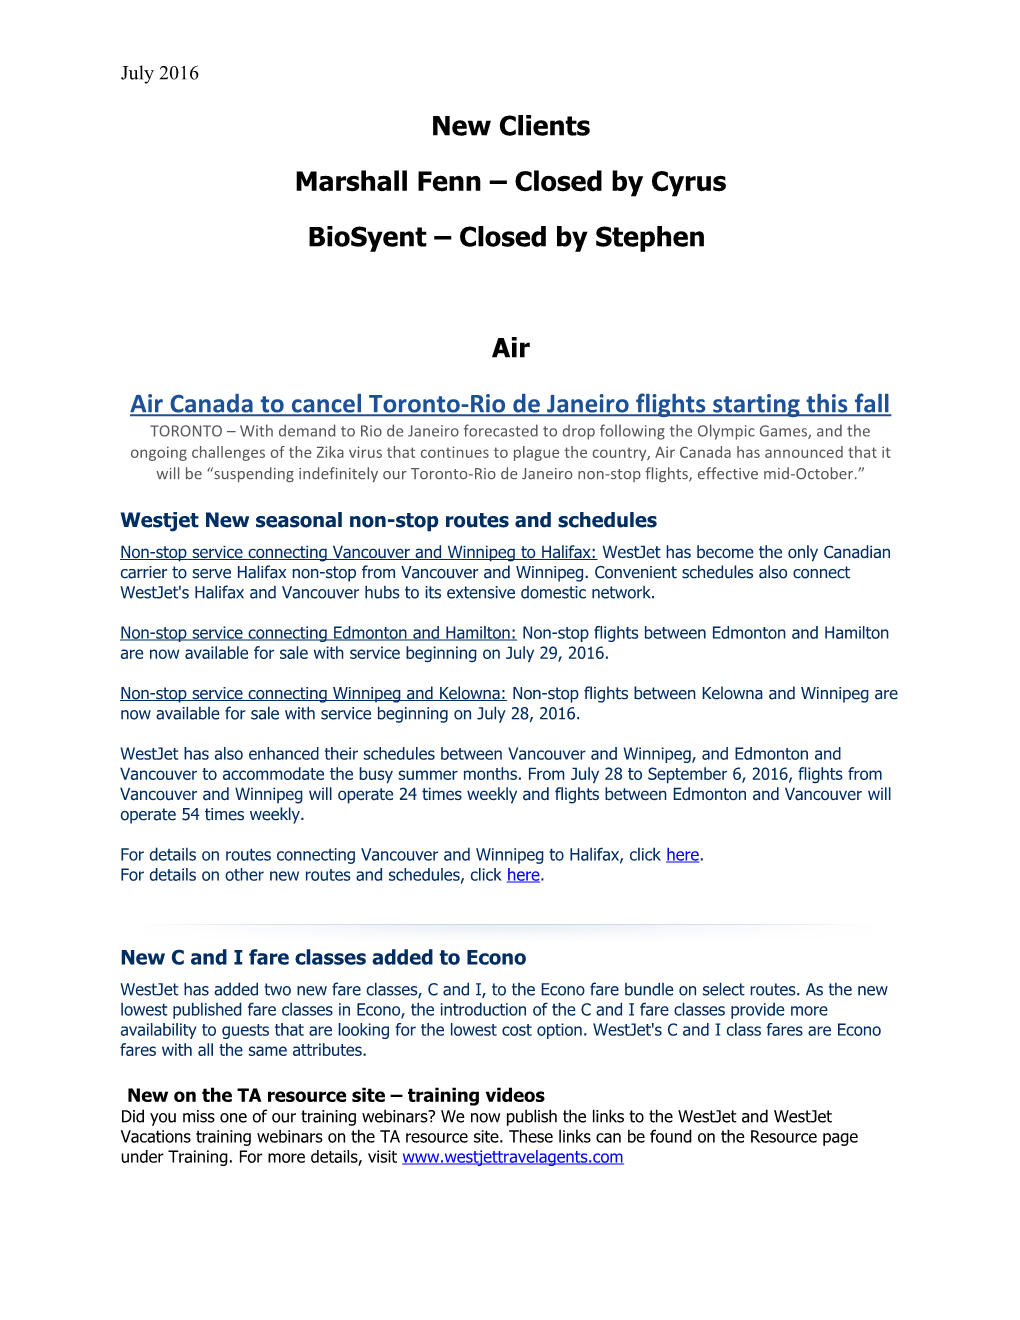 Marshall Fenn Closed by Cyrus